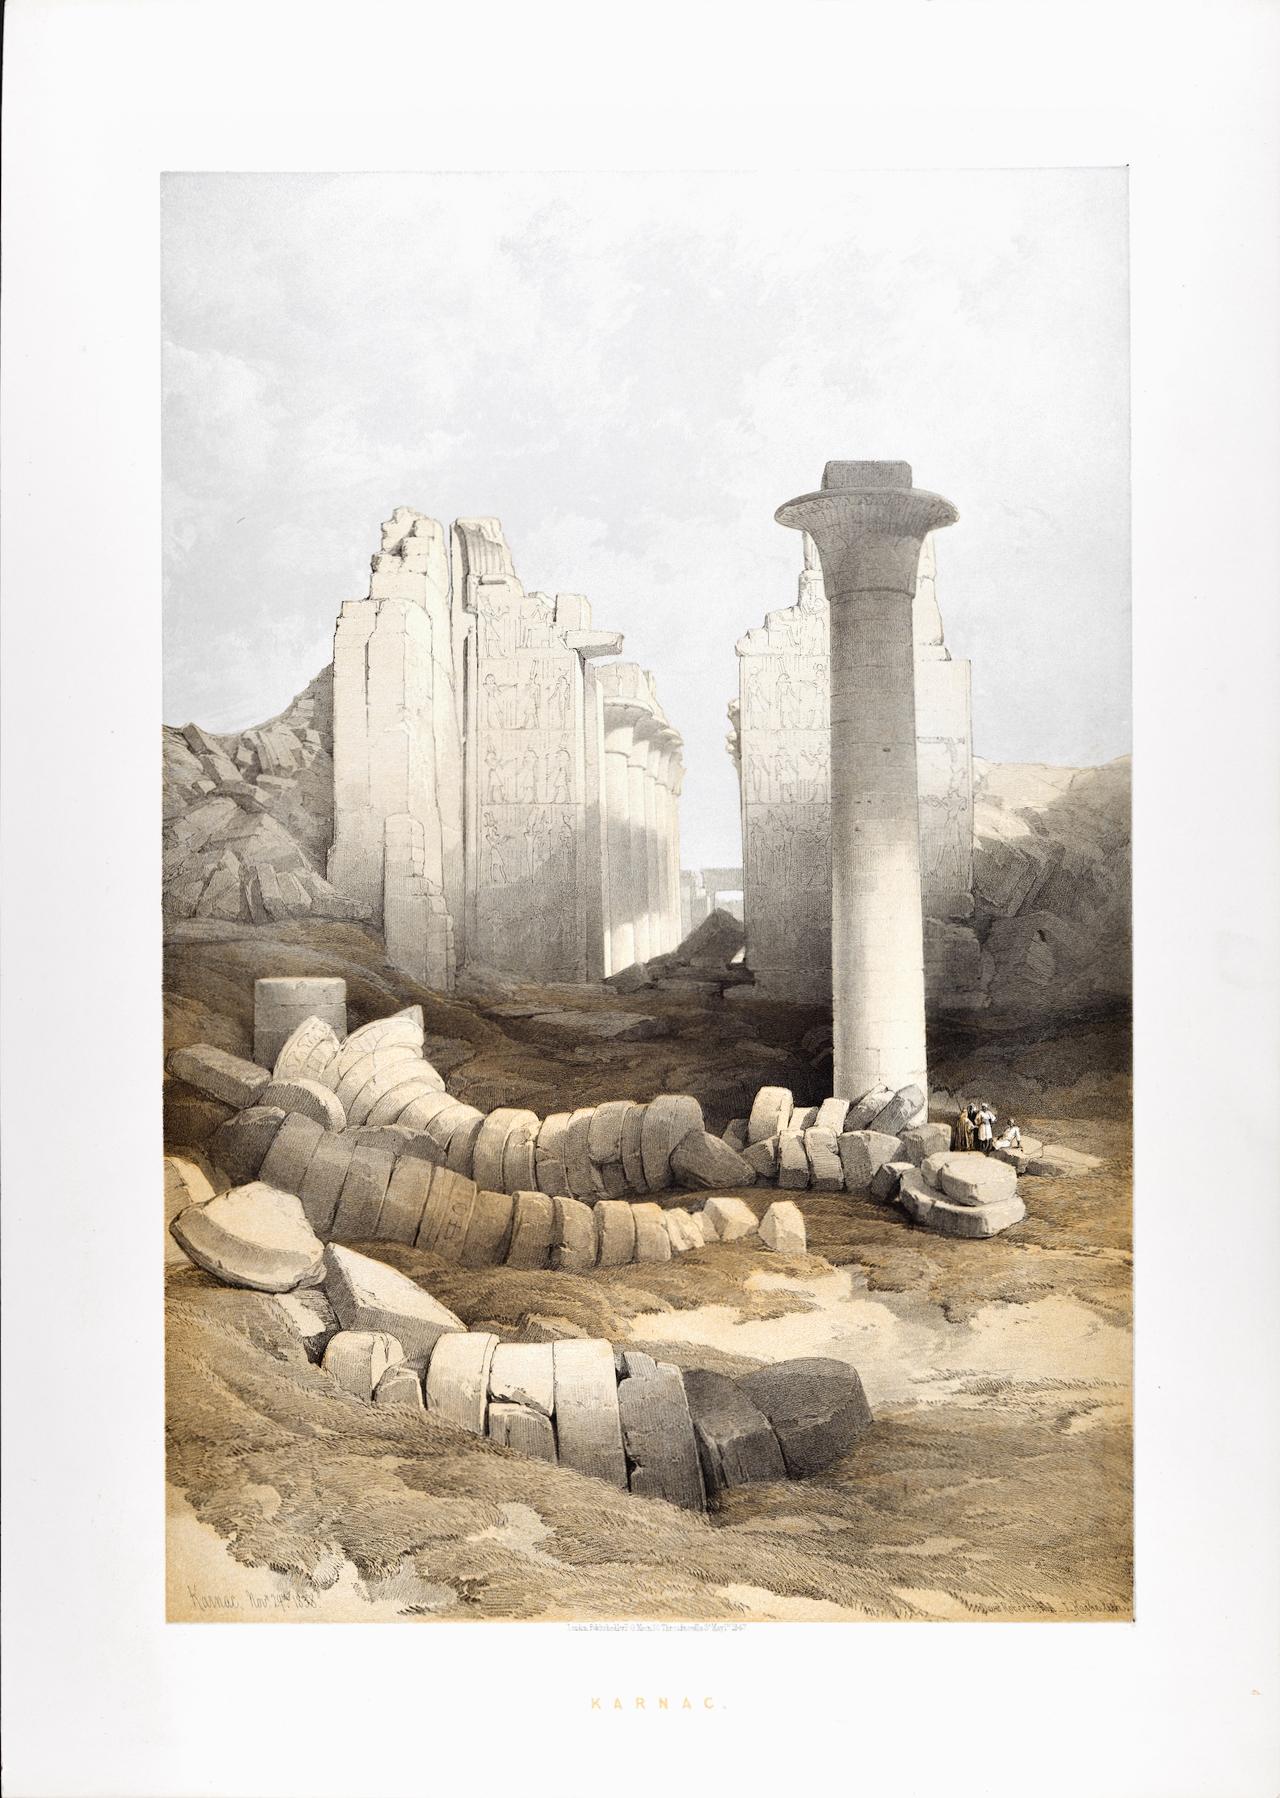 Karnac, Egypt, Nov. 29, 1838: David Roberts' 19th C. Duotone Lithograph